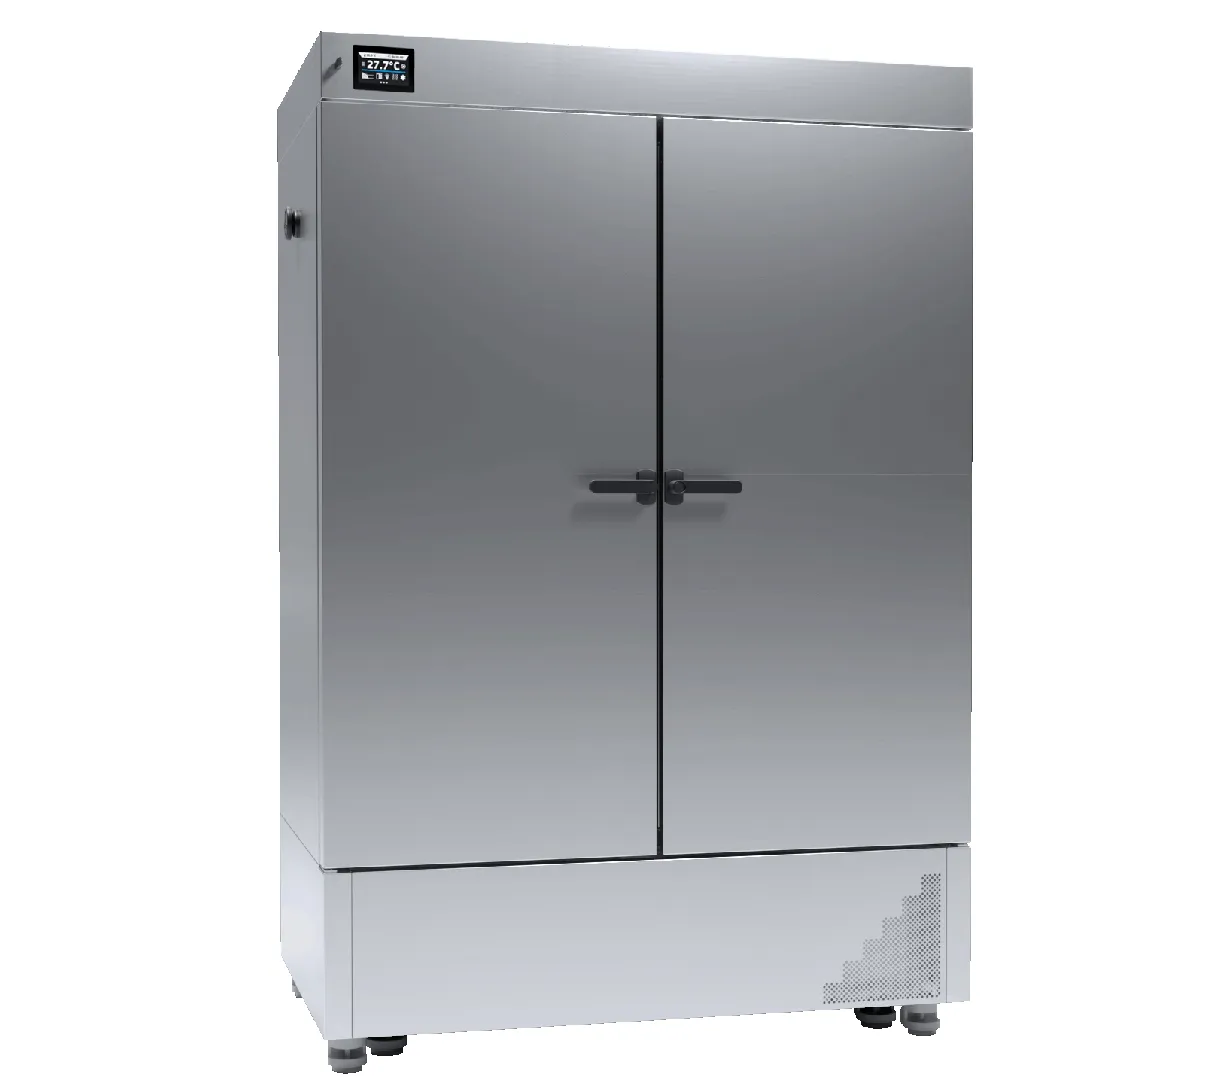 cooled-incubator-ilw-750-smart-inox-c.webp